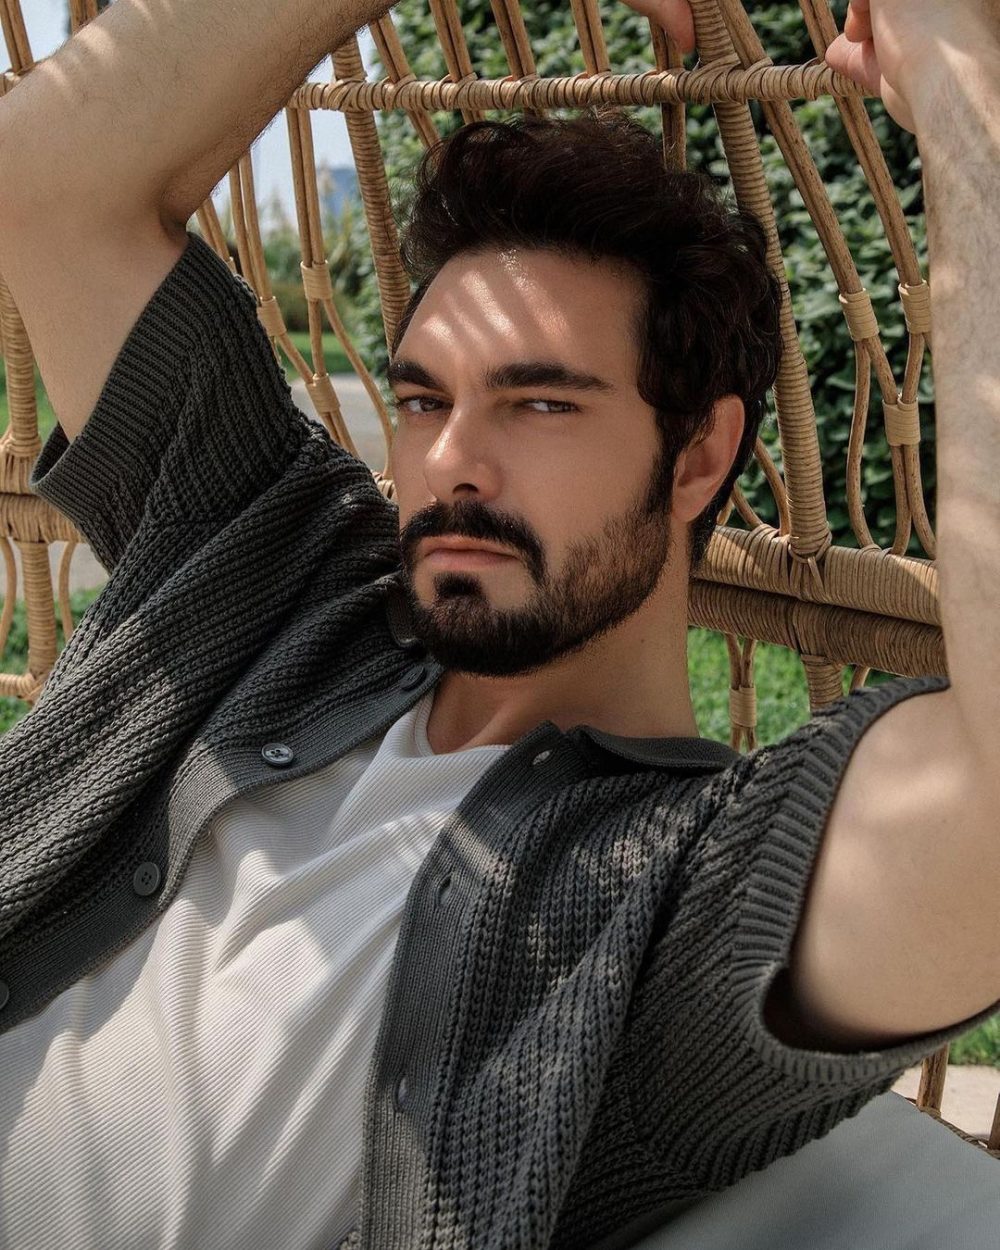 Halil İbrahim Ceyhan – diễn viên, nhạc sĩ, người mẫu Thổ Nhĩ Kỳ